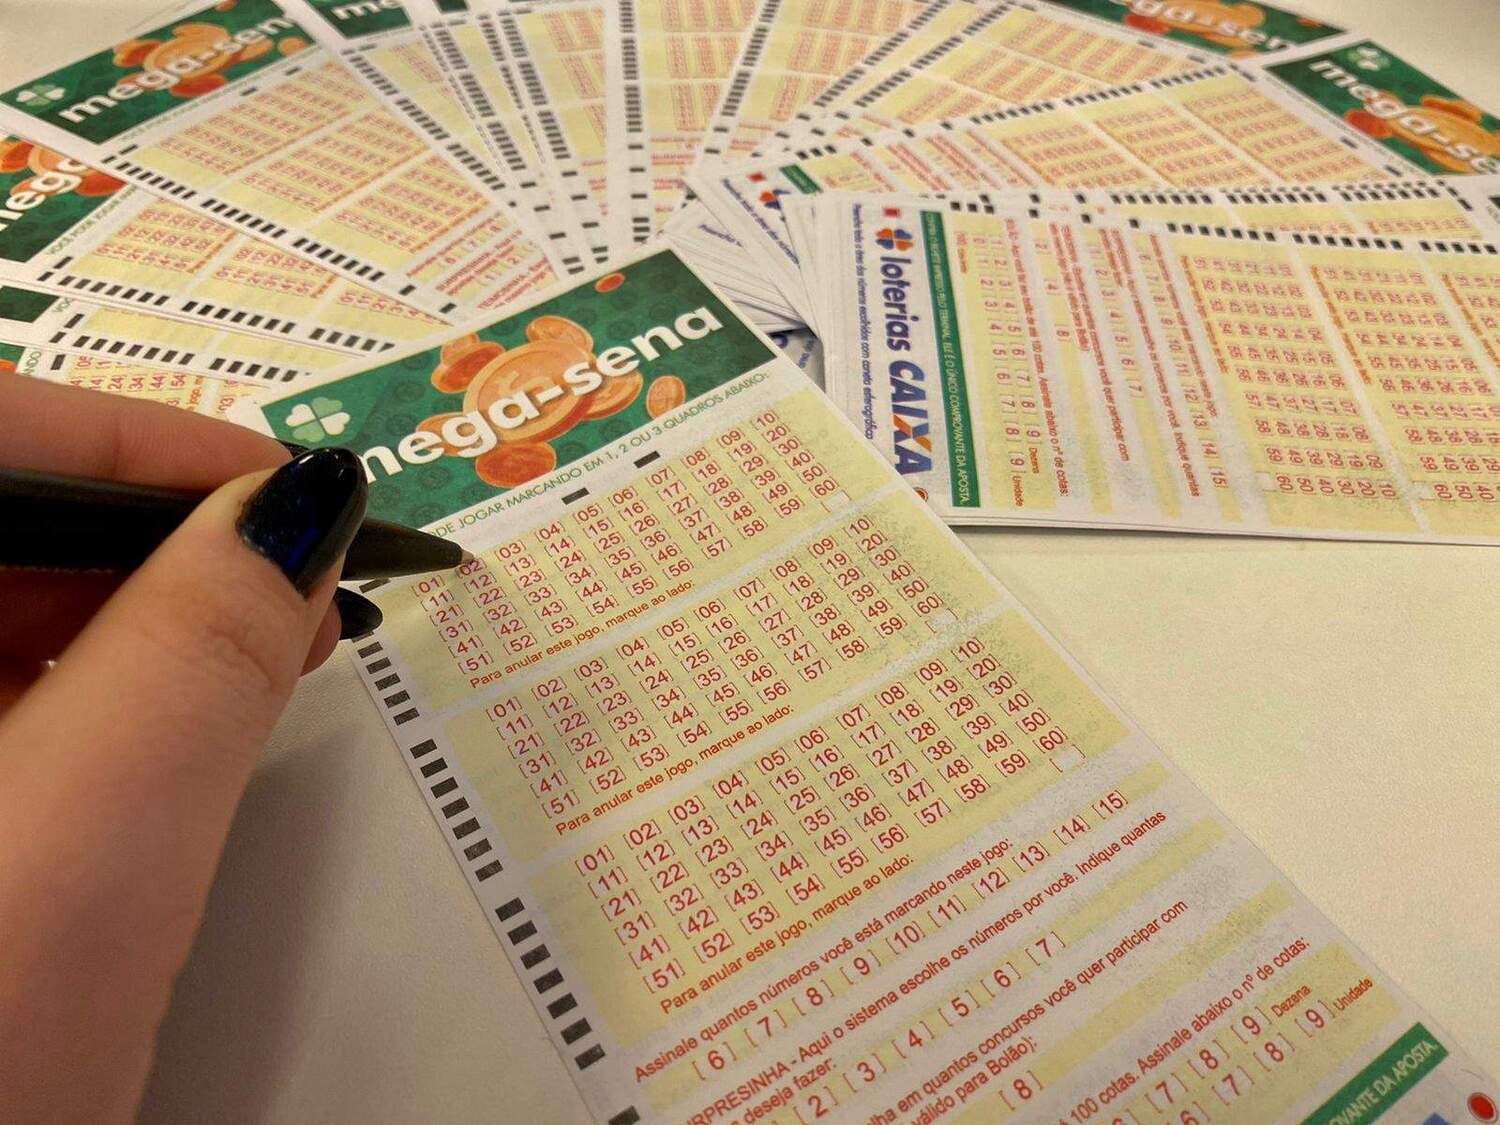 Mega-Sena outros jogos das Loterias Caixa ficarão mais caros